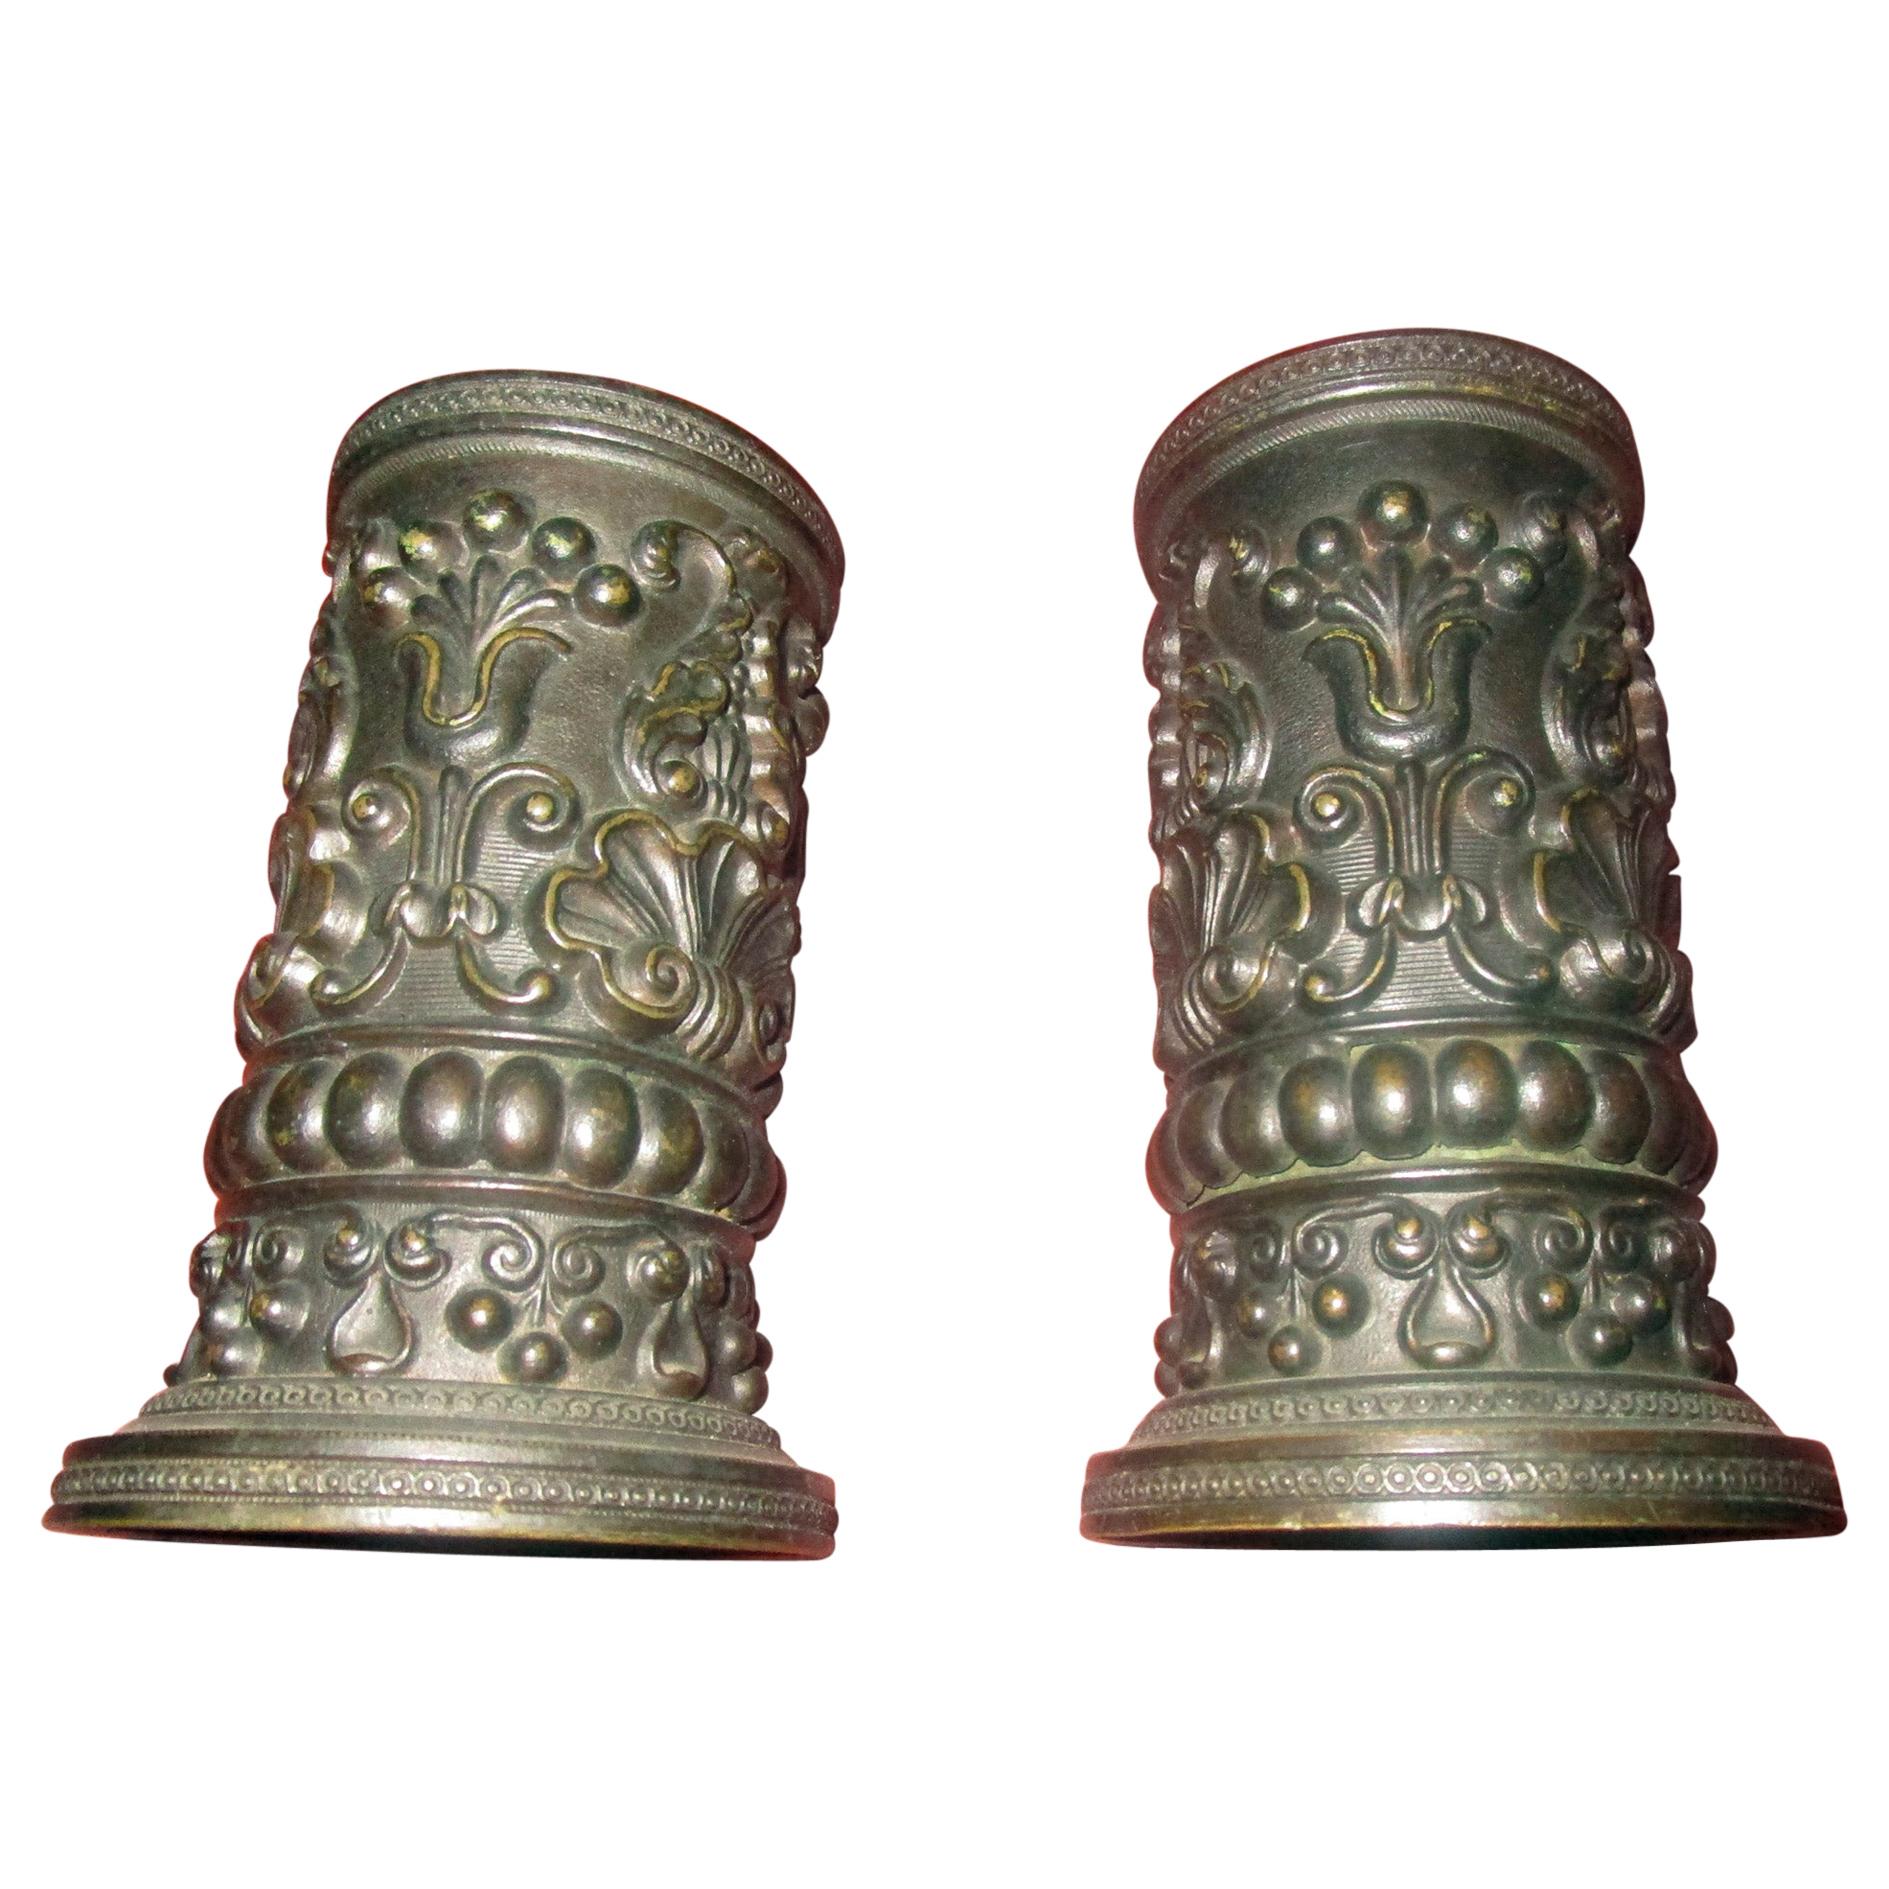 Petits vases de déversement en bronze de style Régence anglaise du XIXe siècle